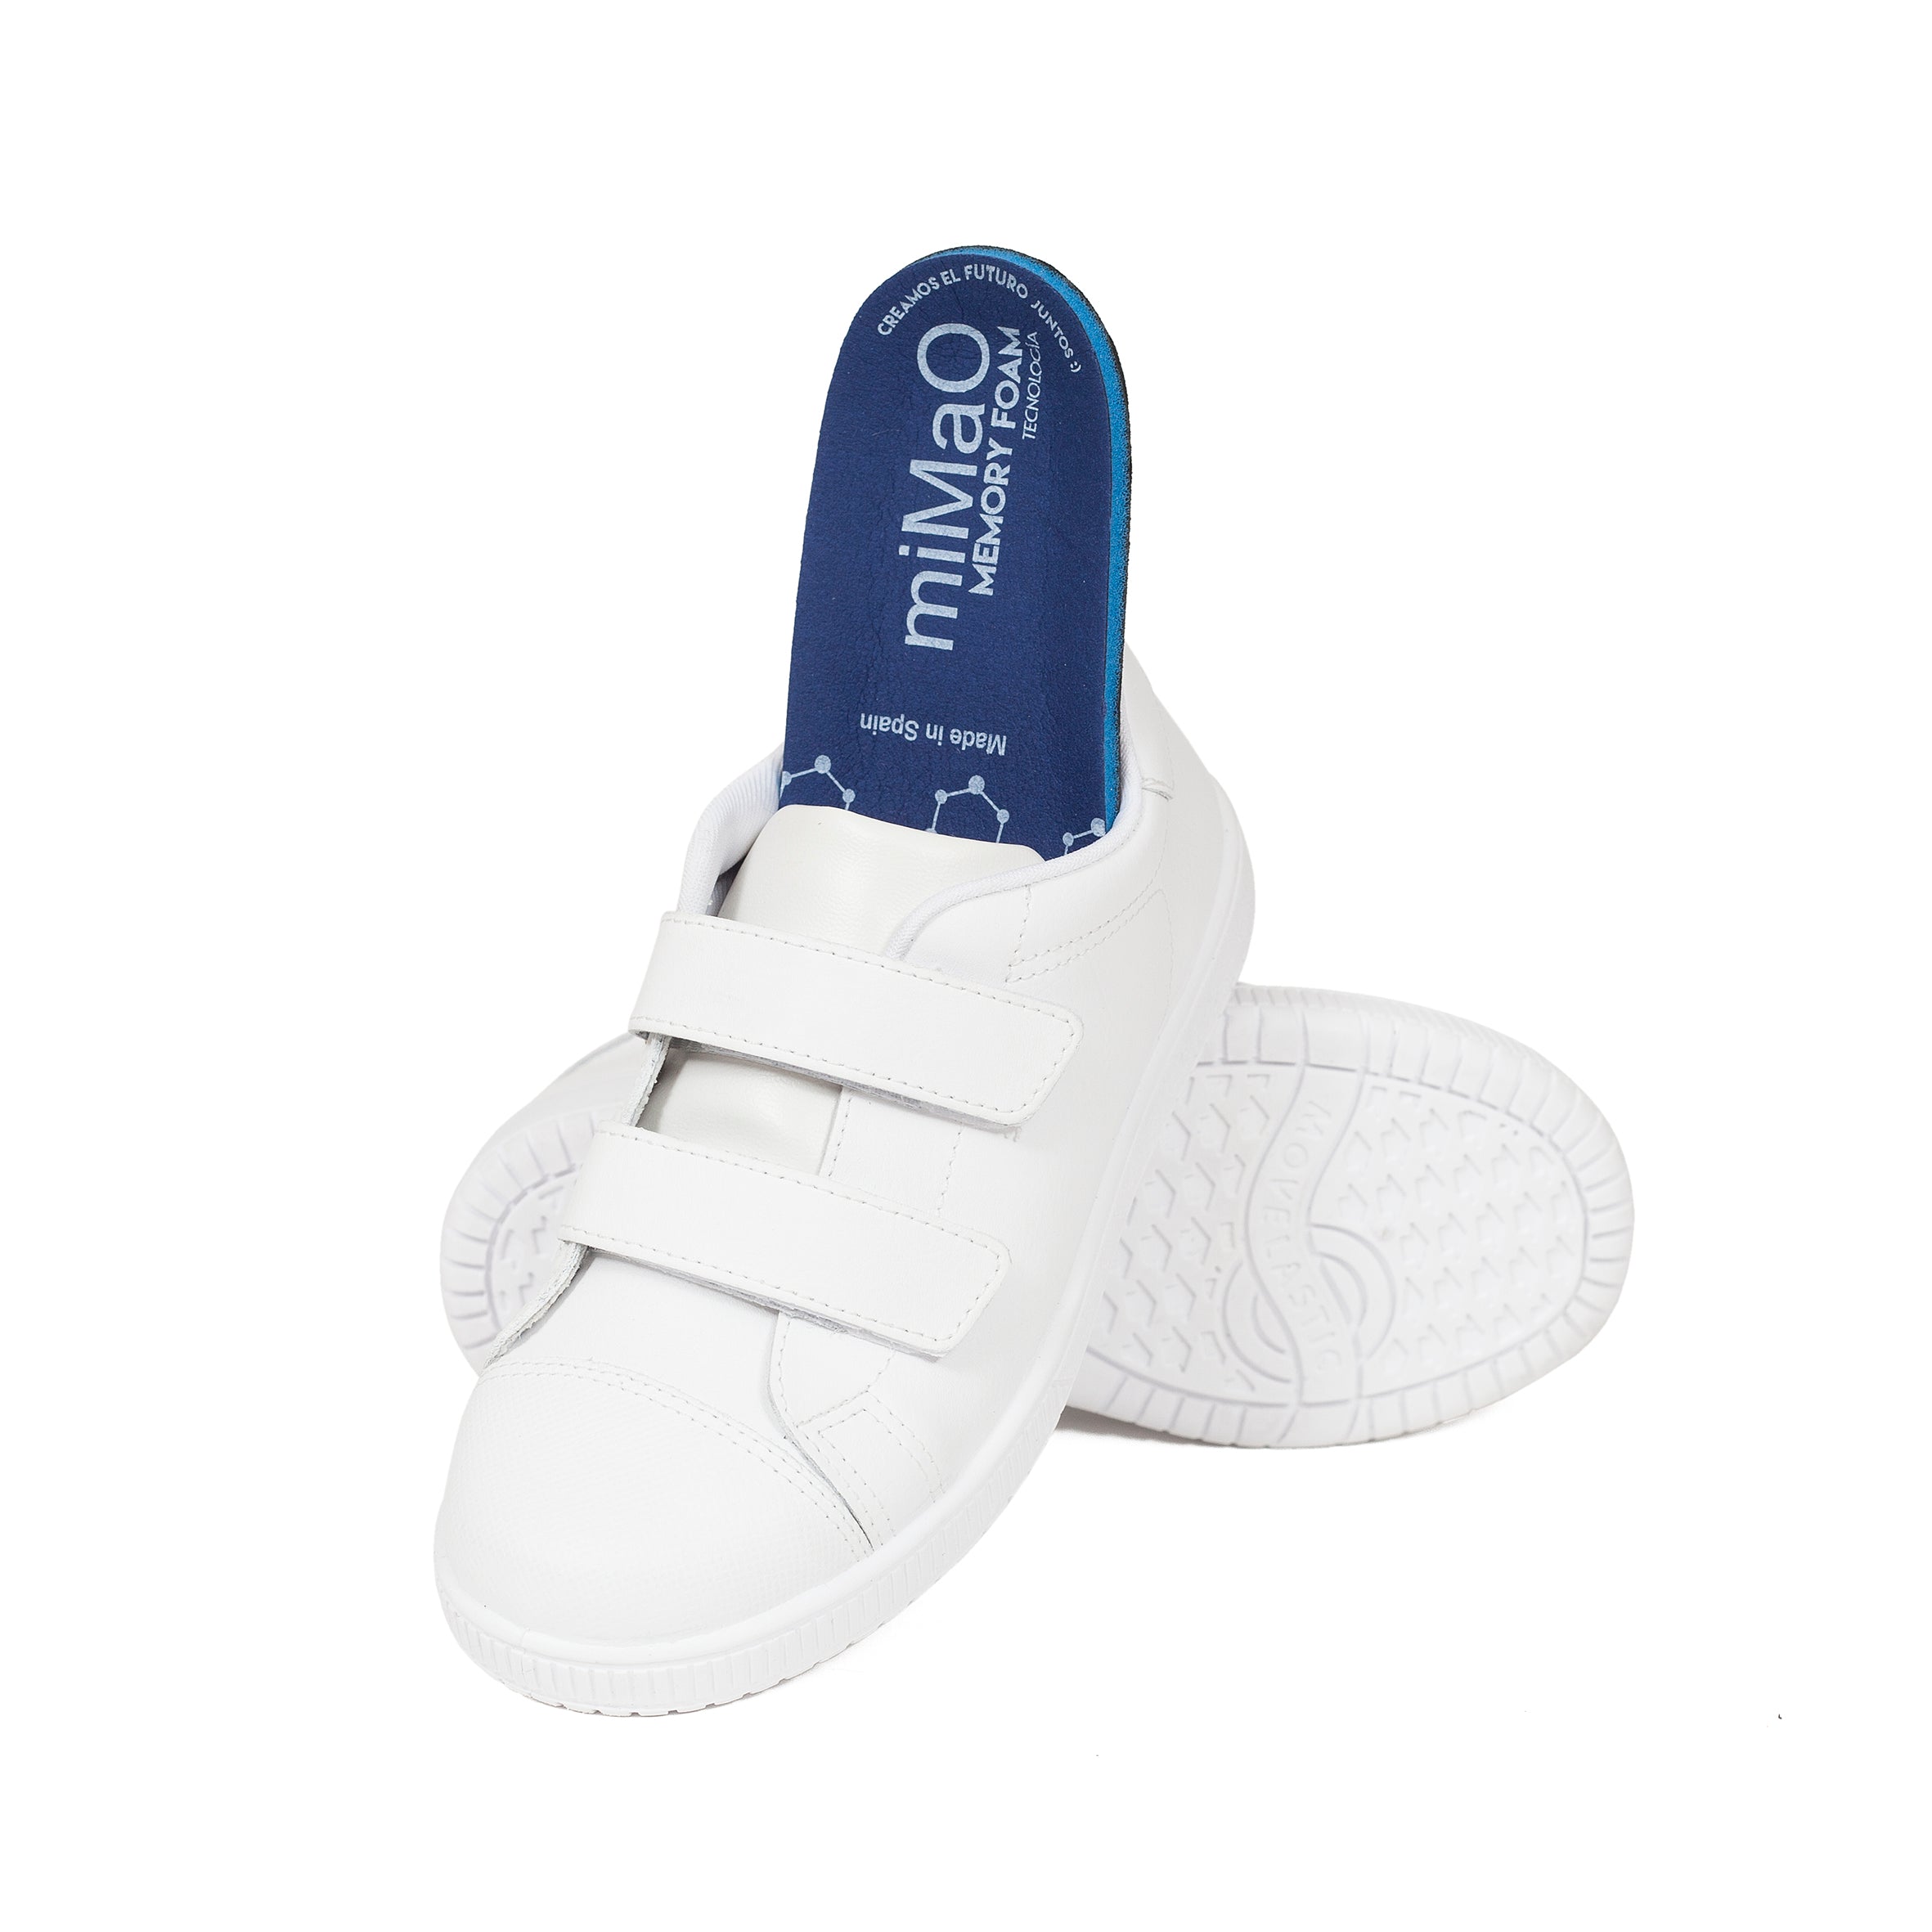 Zapatos escolares para uniforme niño en piel lavable con puntera reforzada